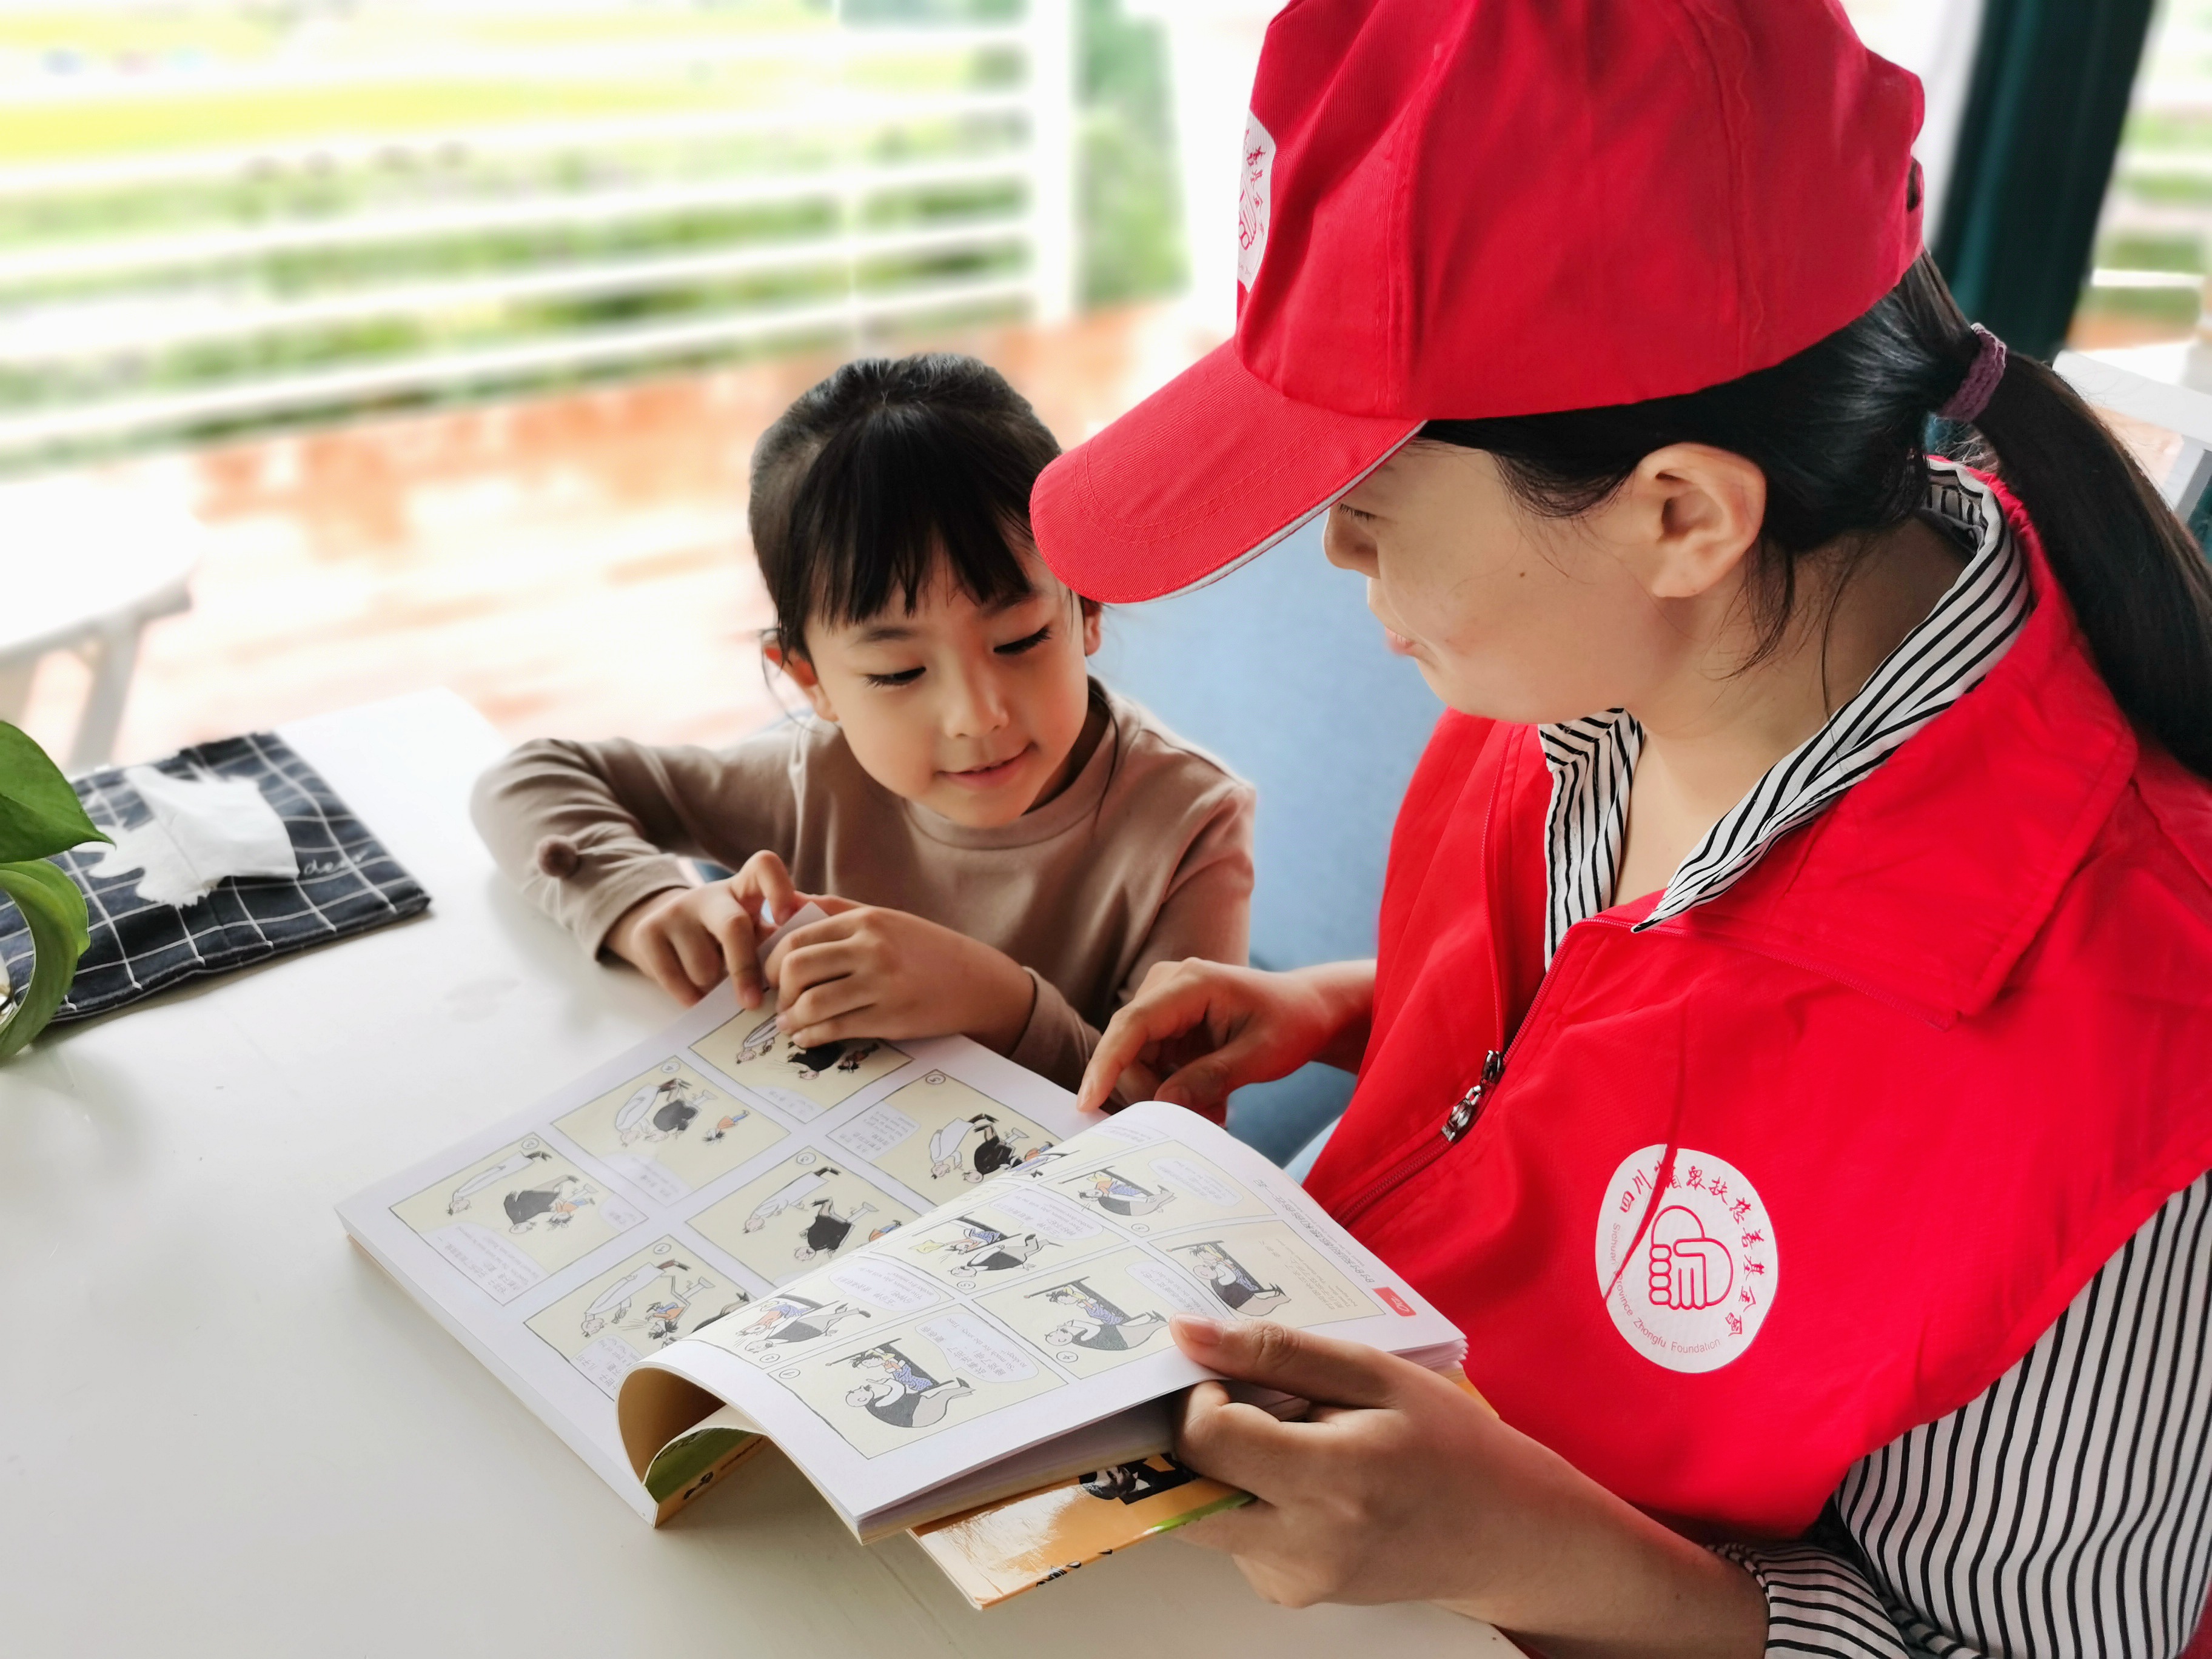 四川省众扶慈善基金会志愿者服务站亲子读书活动在我的田园举行